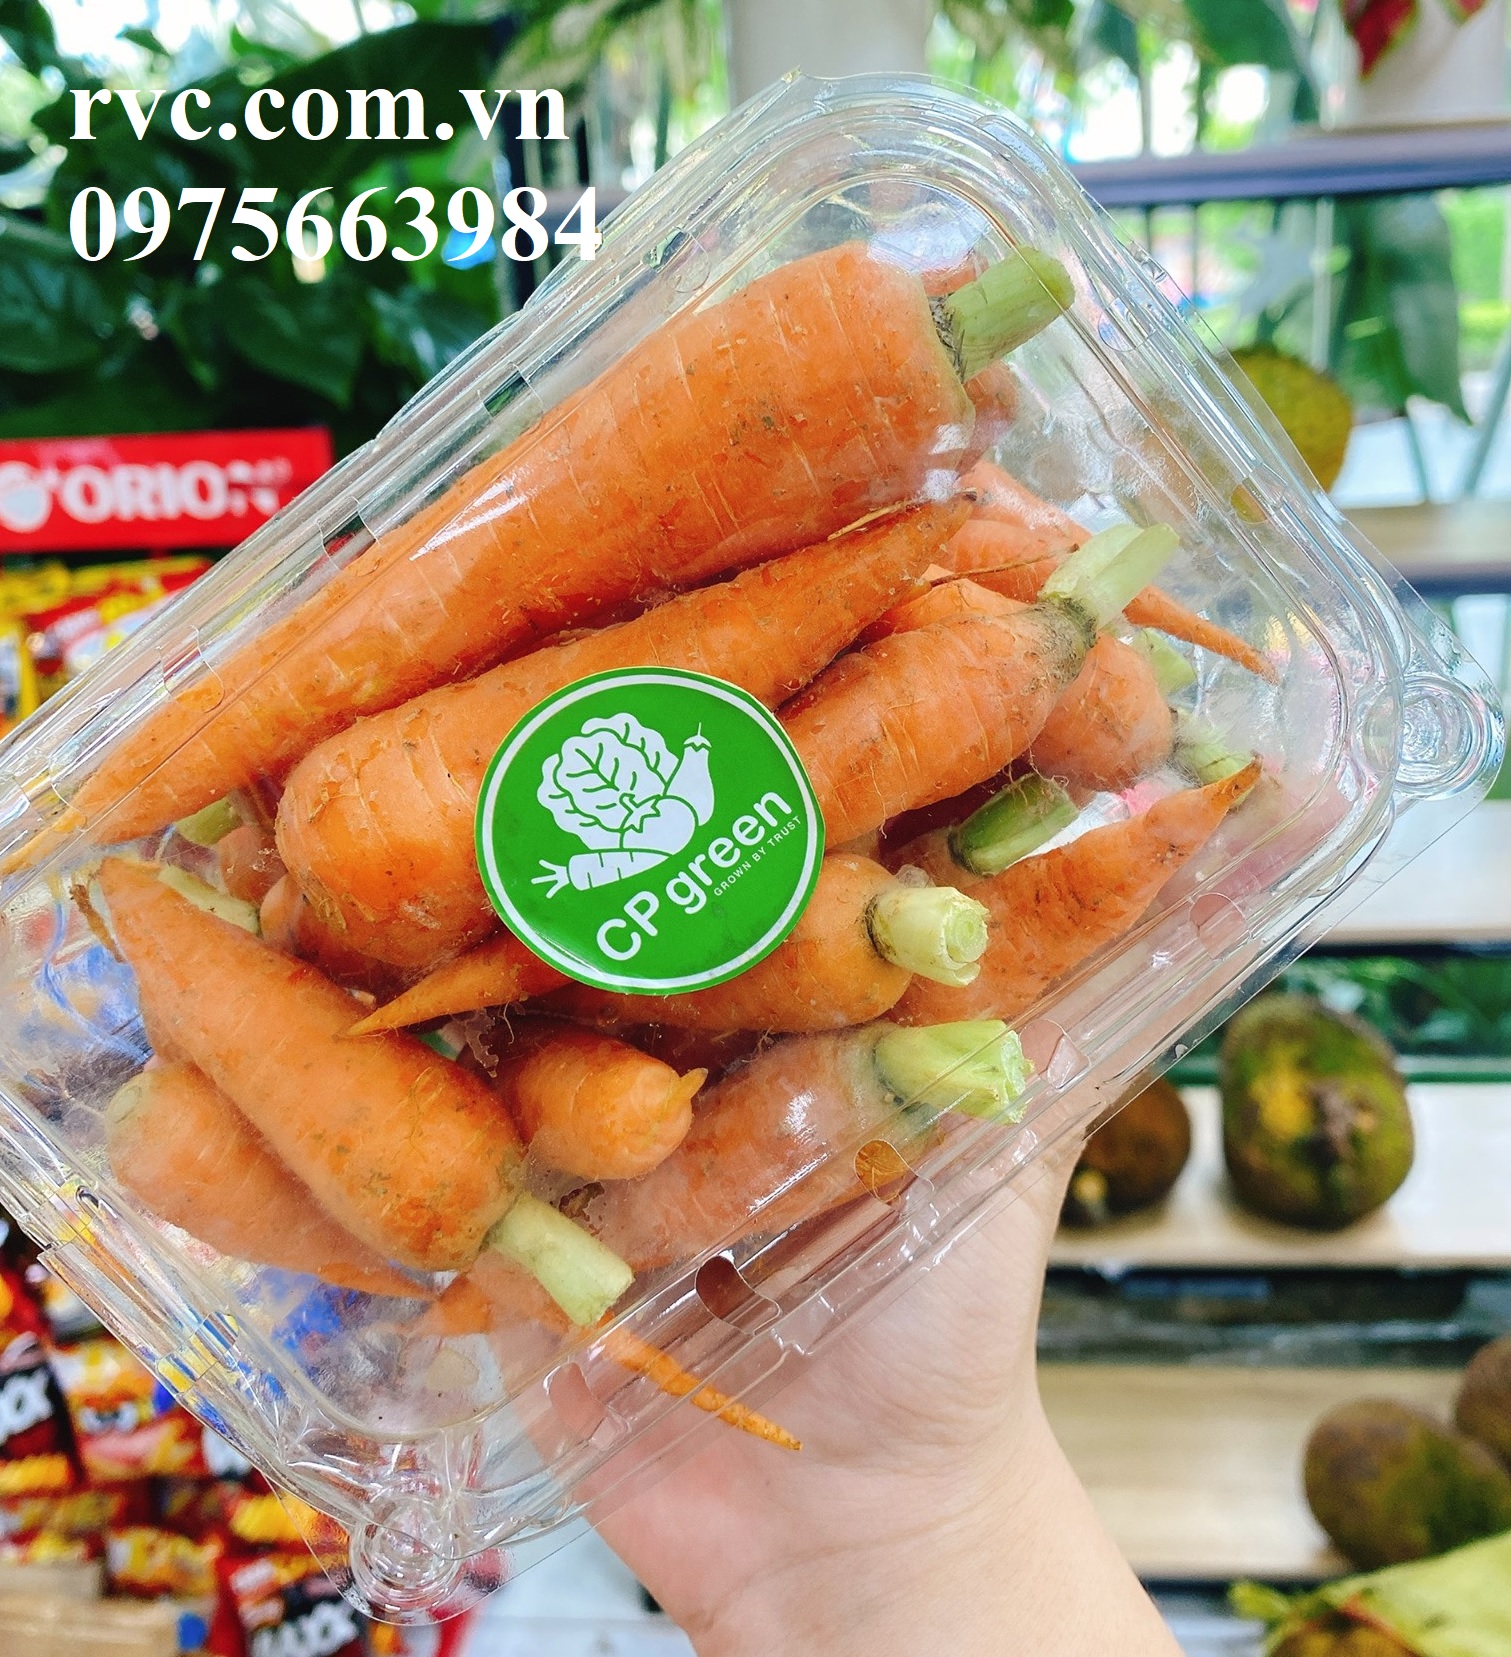 cần-bán - Hộp nhựa P500B đựng 500g hoa quả sử dụng 1 lần chuyên cung cấp vào siêu thị  1800724994572759552